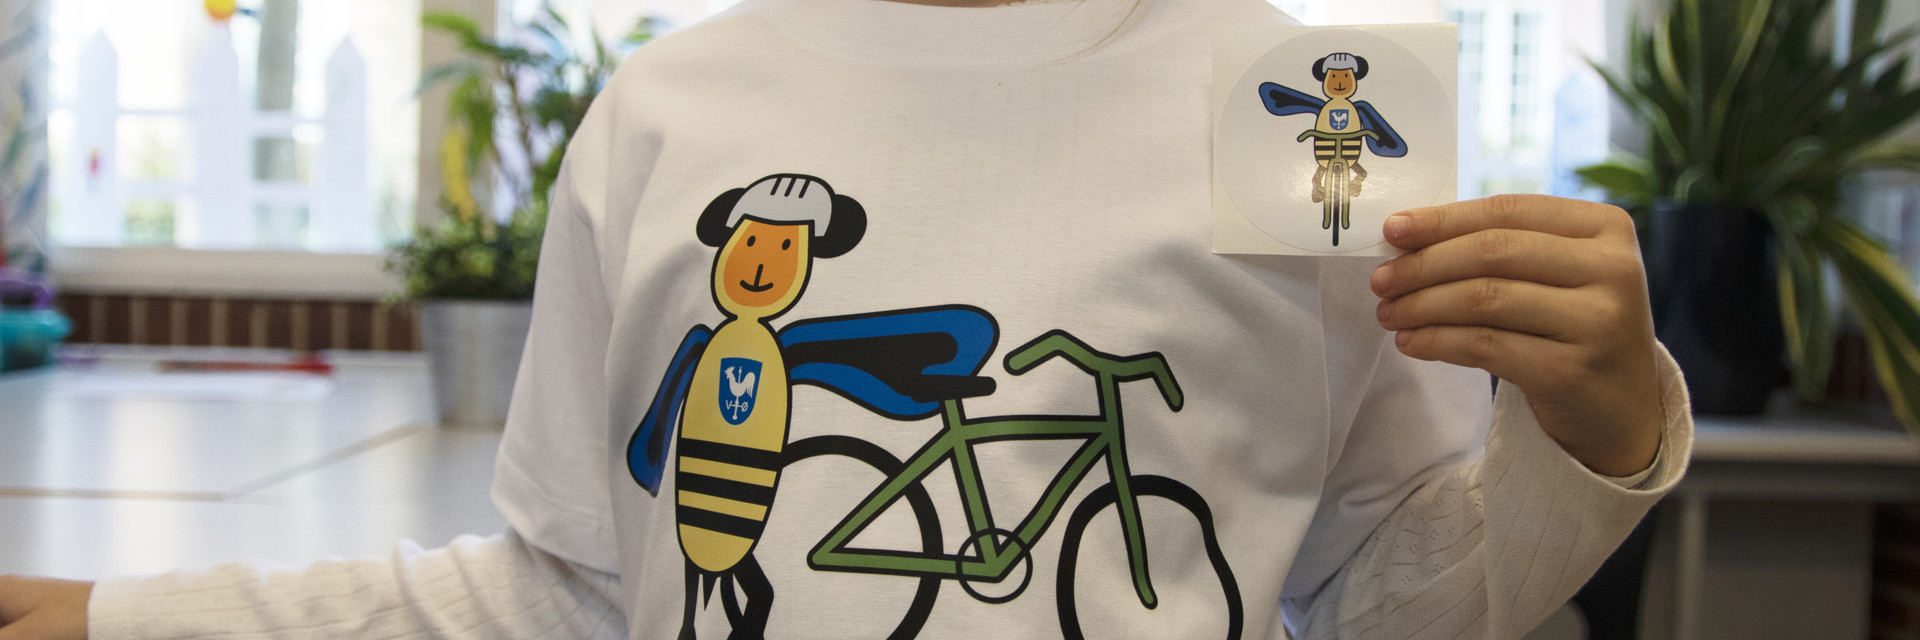 Albertslund har fået sin egen cykelmaskot - cykelbi | Albertslund Kommune